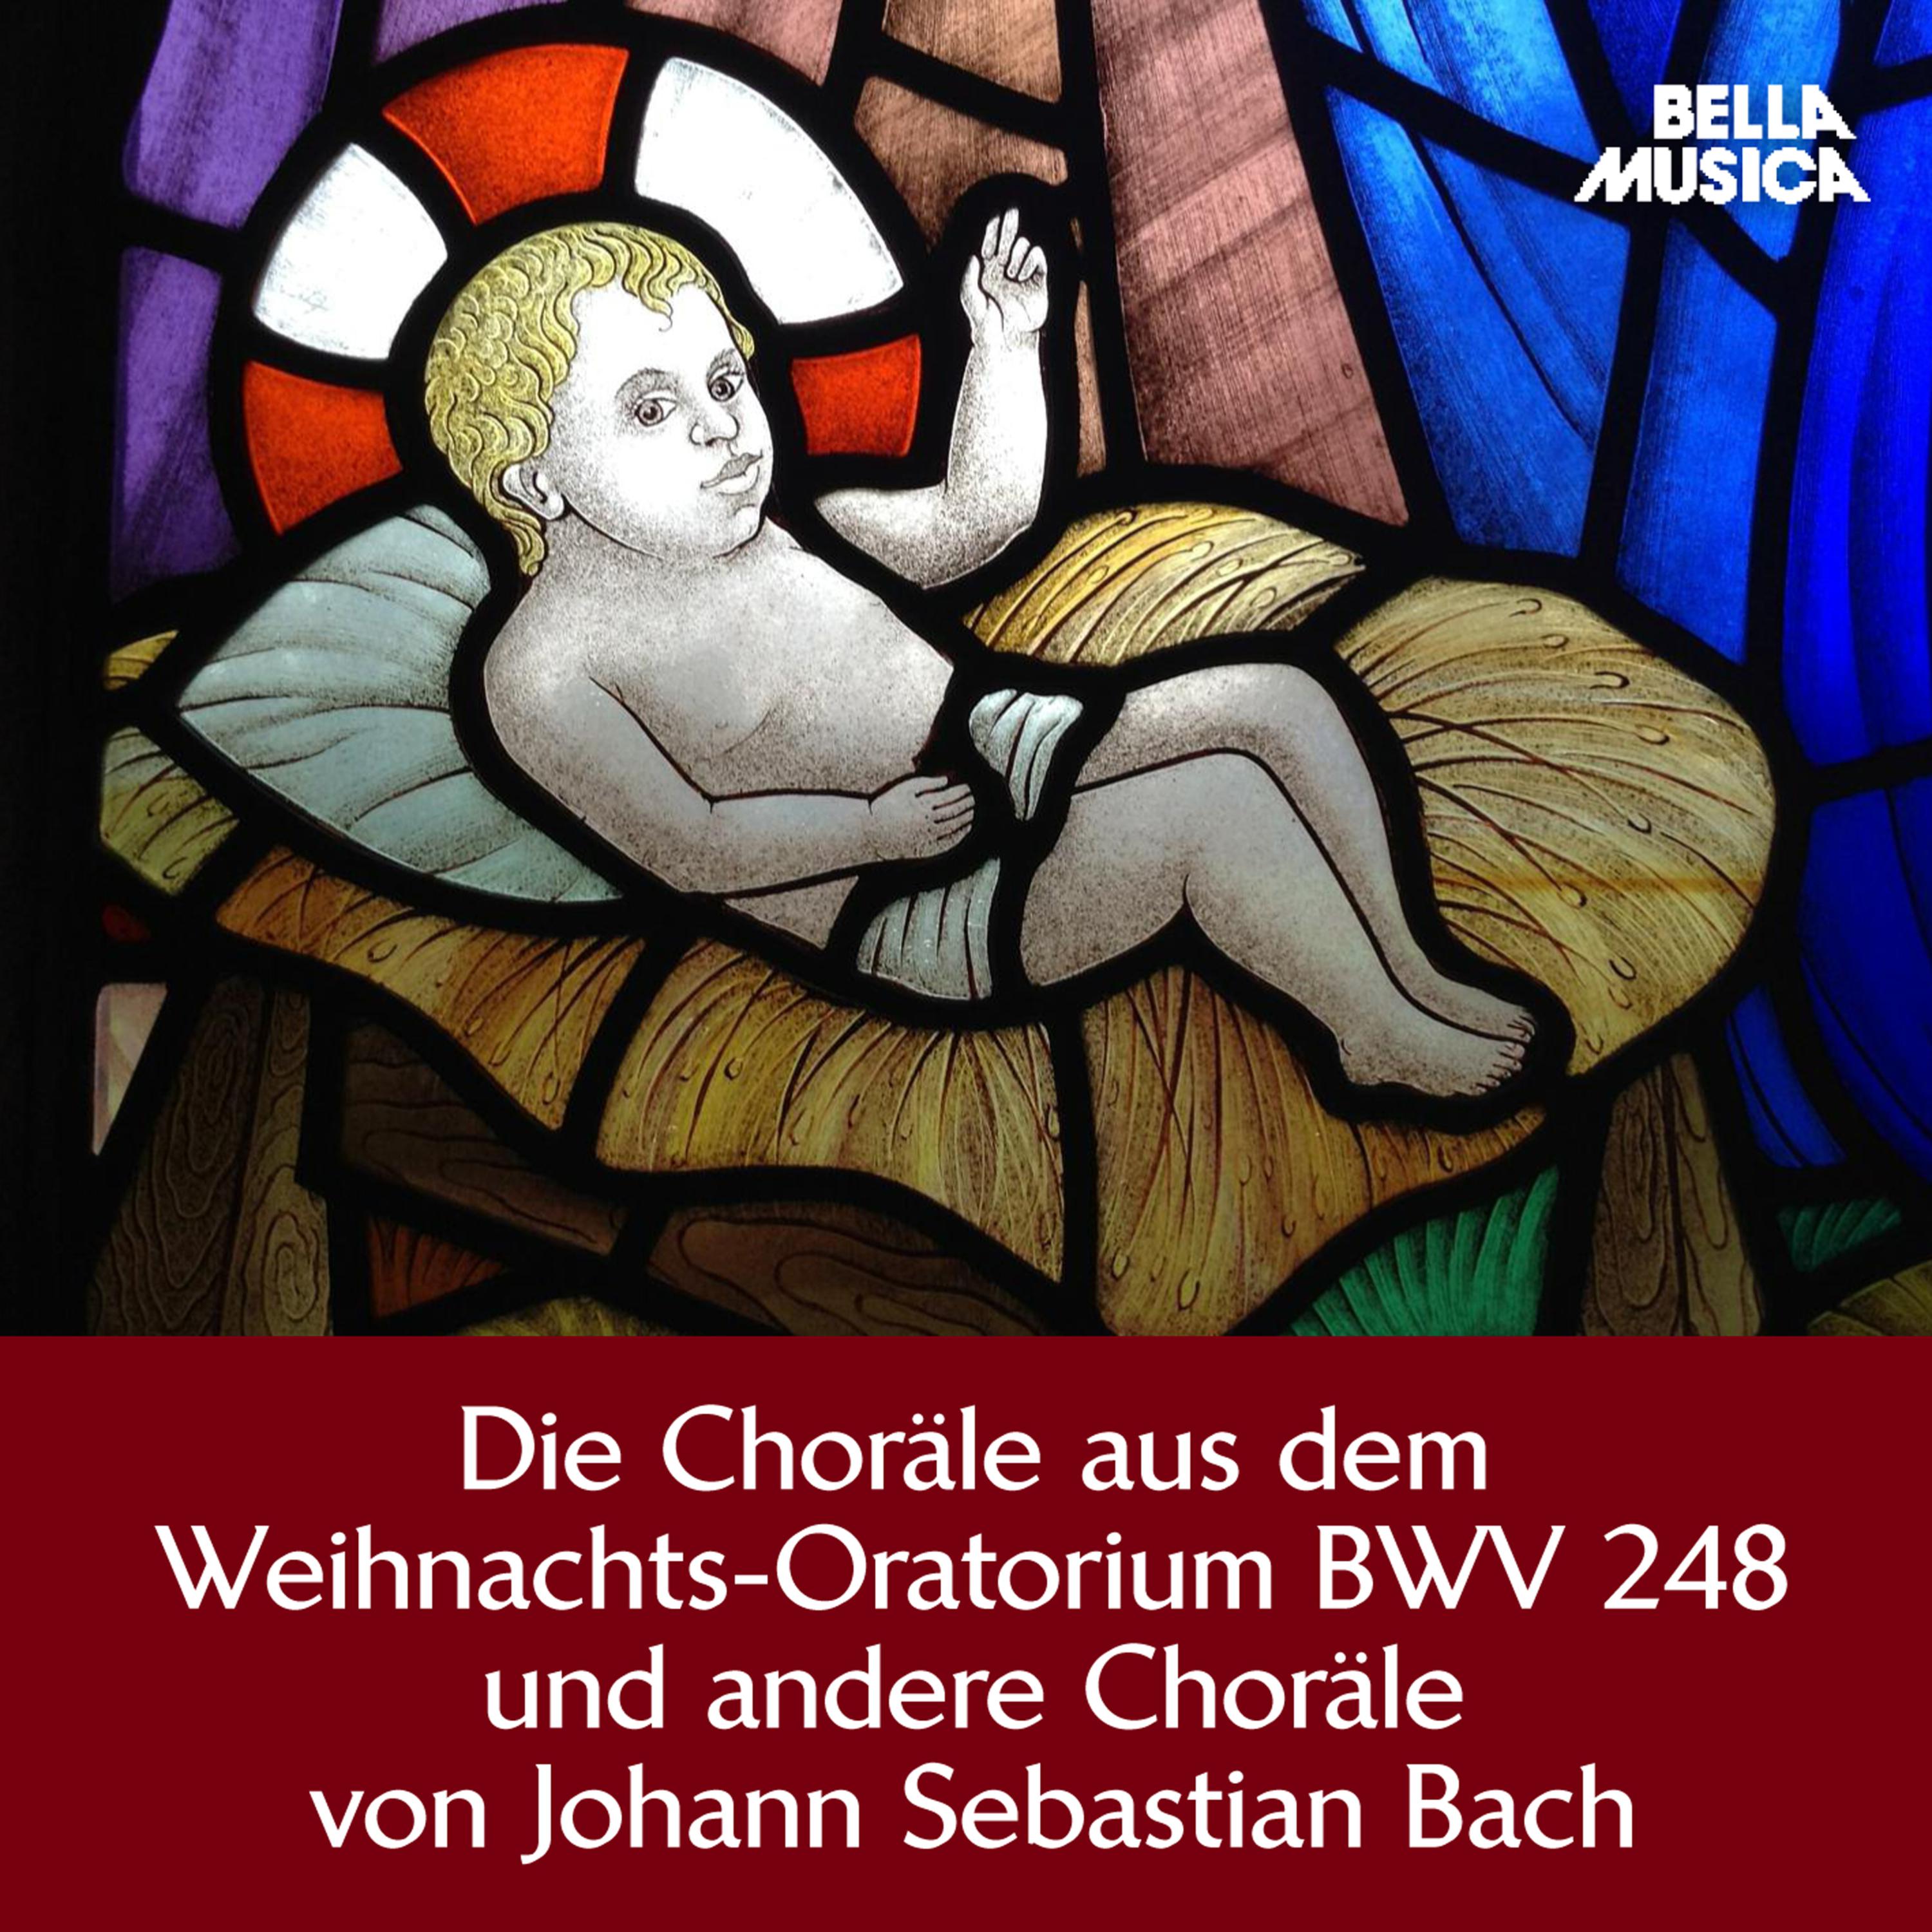 Weihnachts-Oratorium, BWV 248, Teil 1, Am 1. Heiligen Weynachts-Feyertage: Ach, mein herzliebes Jesulein